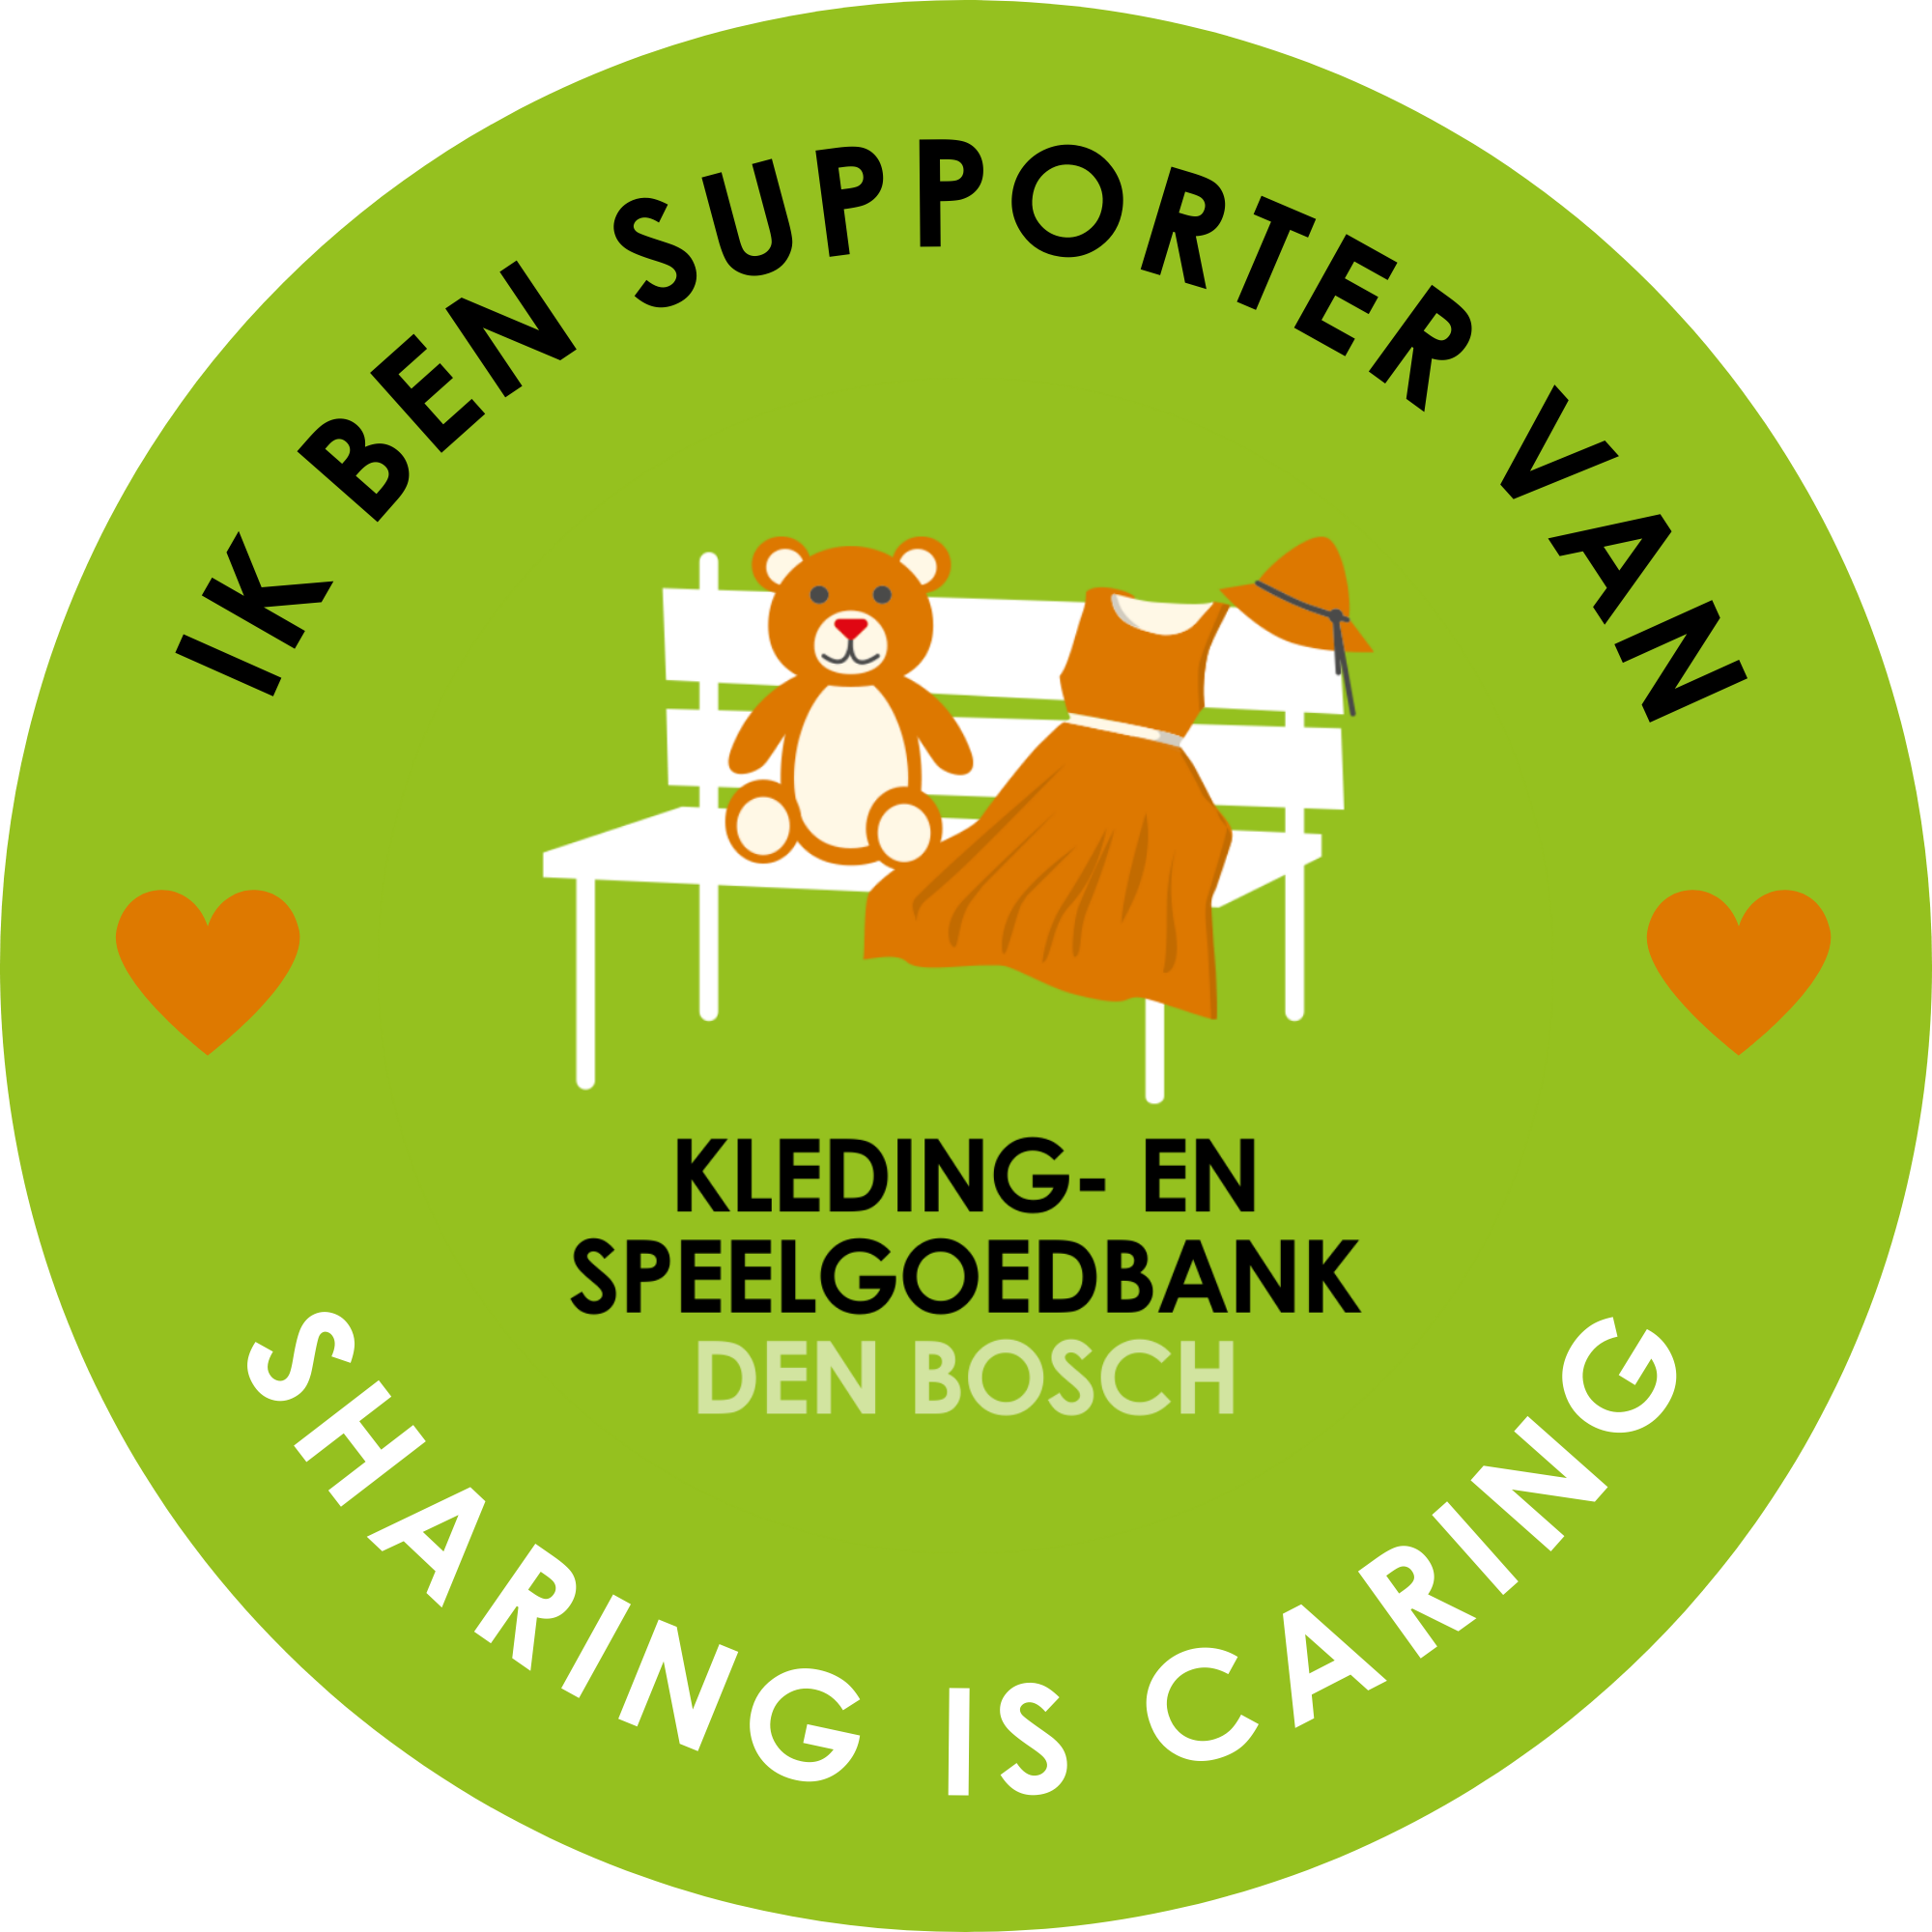 Ik ben supporter van KBSB sticker